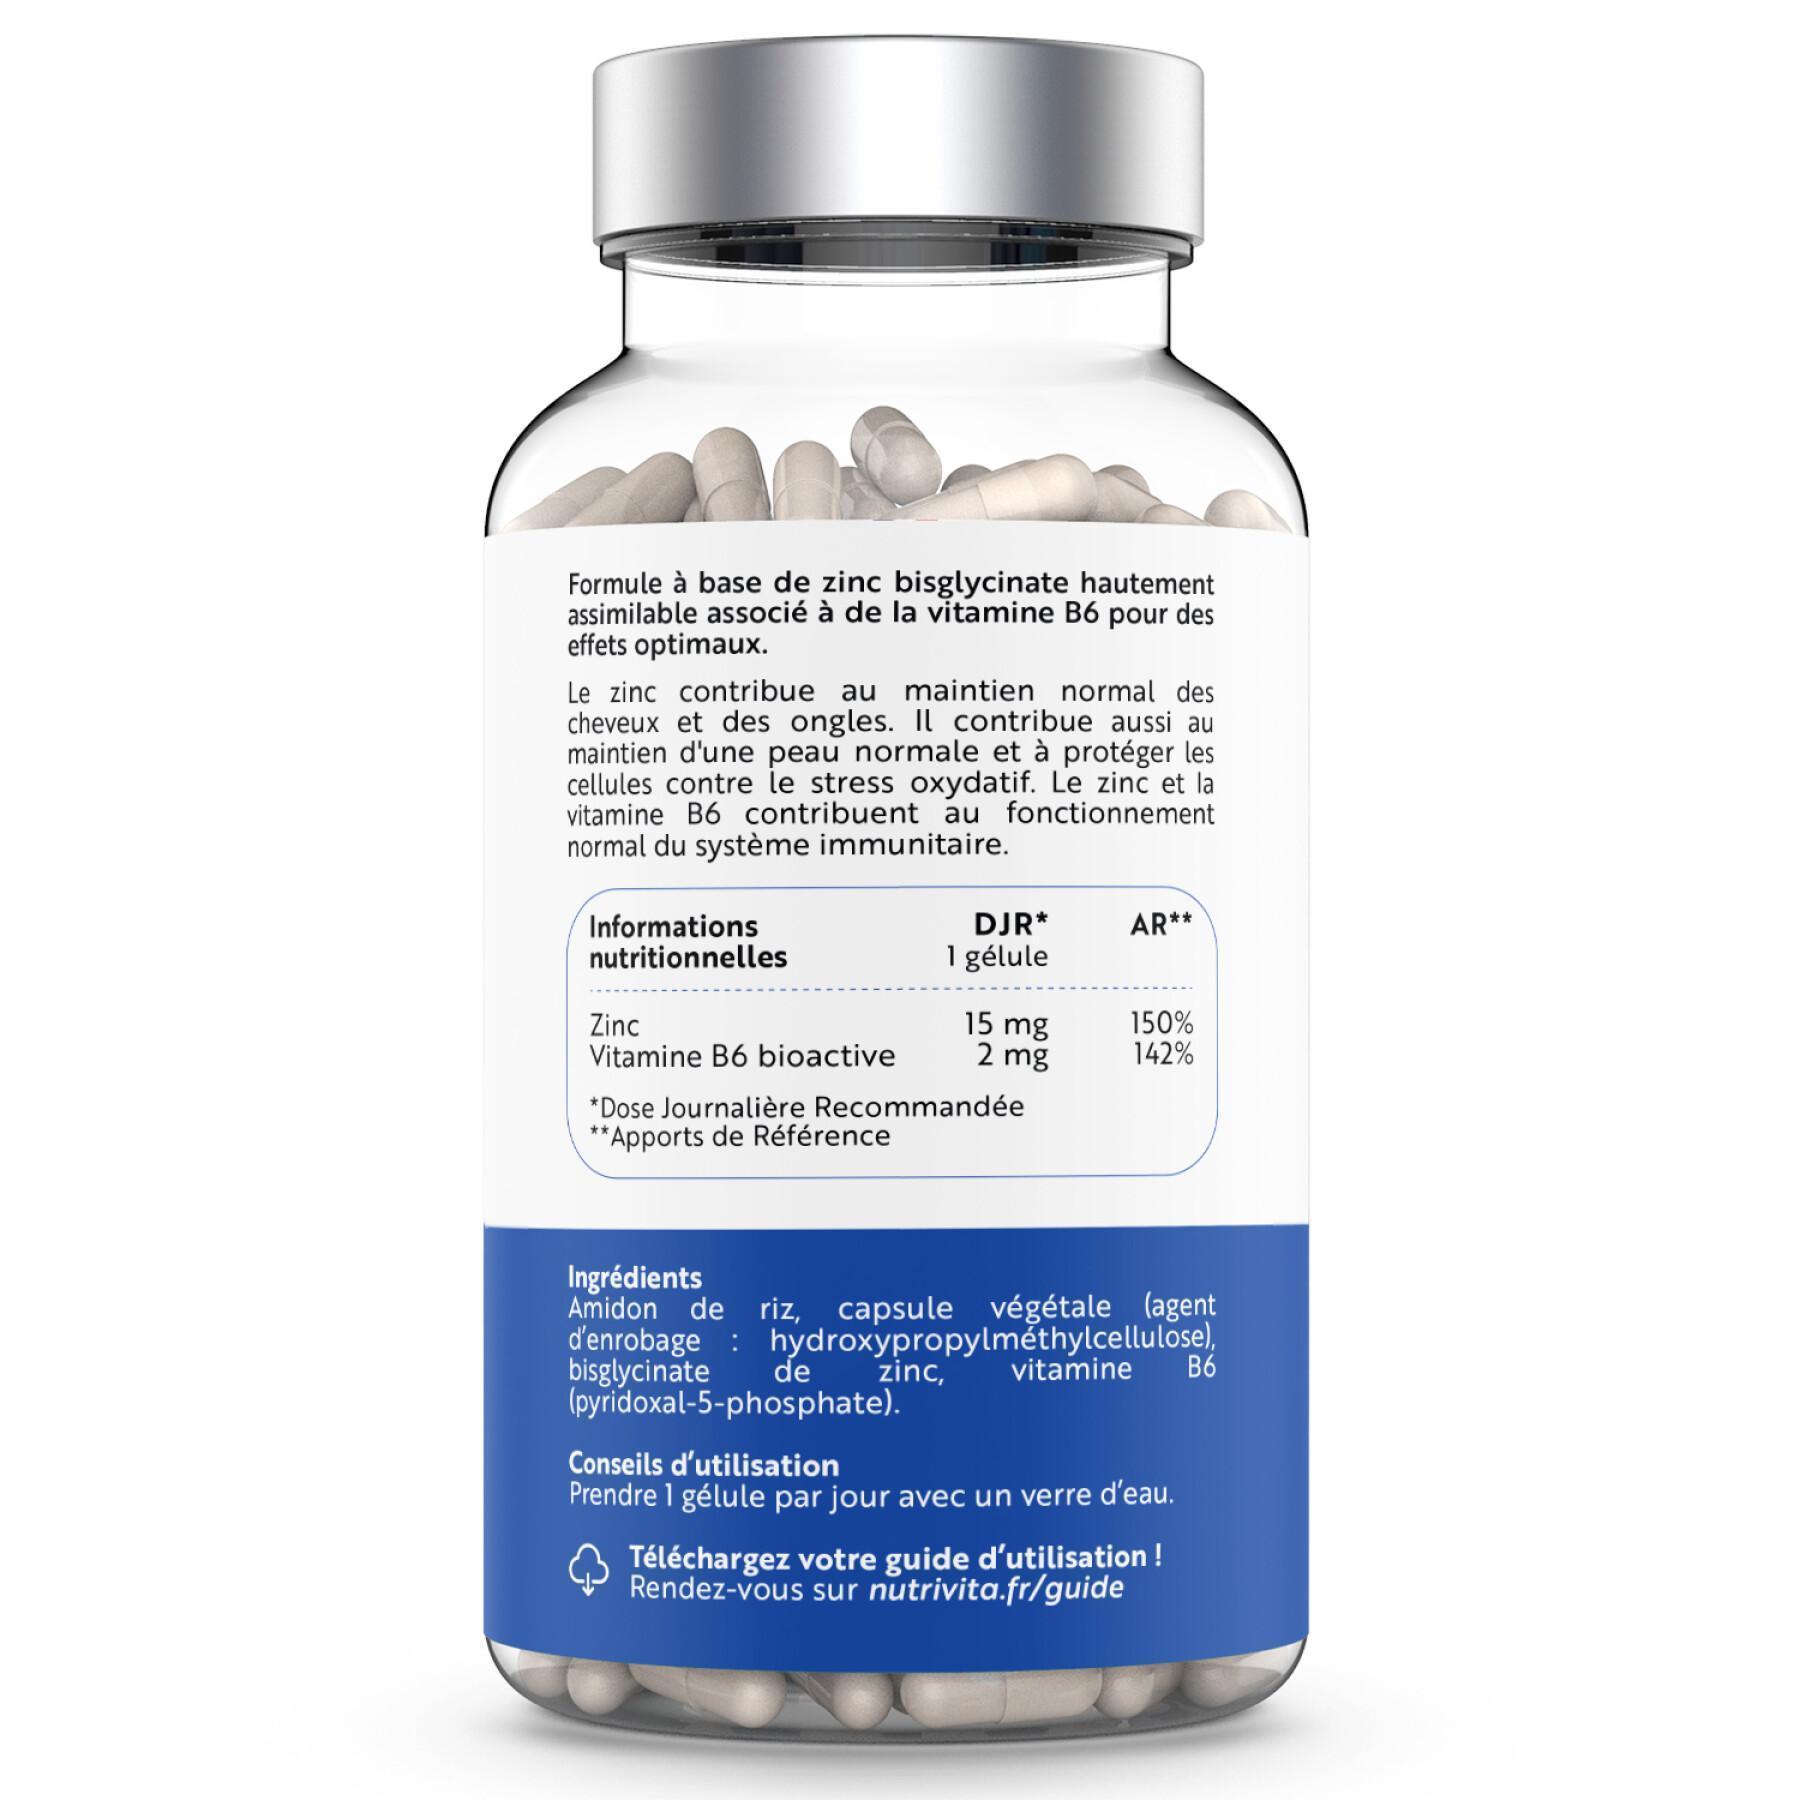 Zinc b6 food supplement - 120 capsules Nutrivita